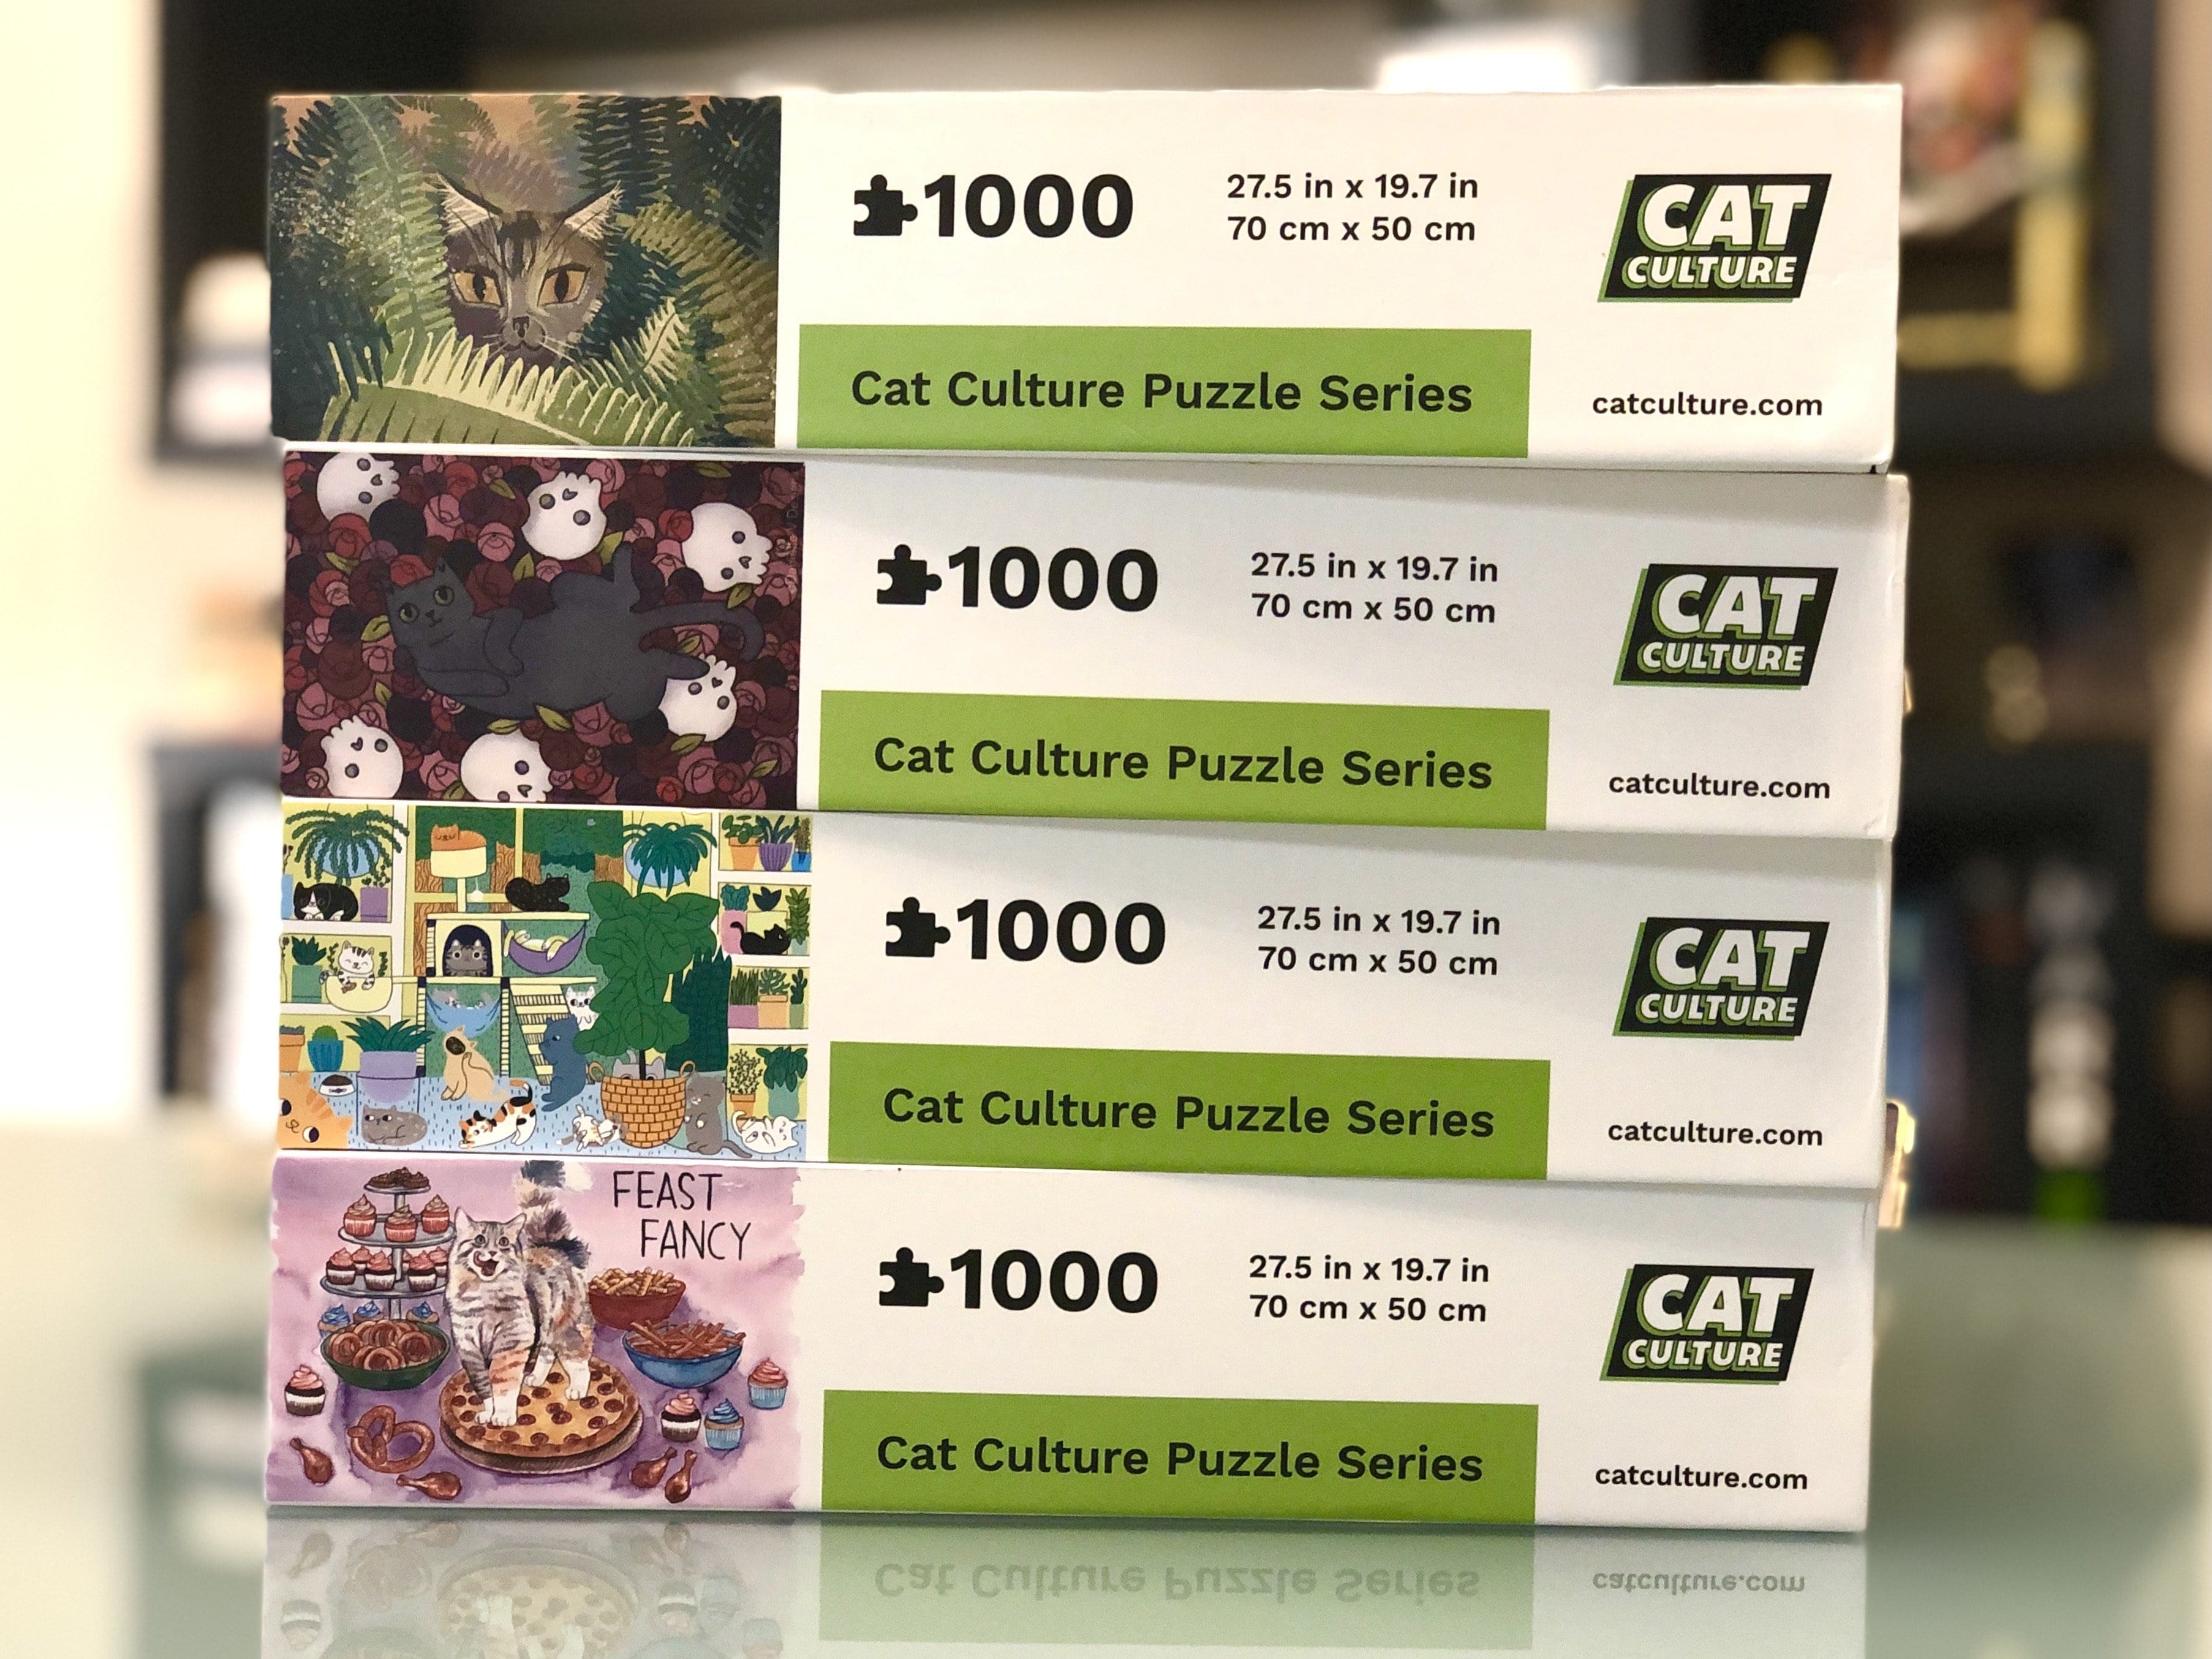 Cat Culture 3 Puzzle Bundle - Limited Edition Artist Series